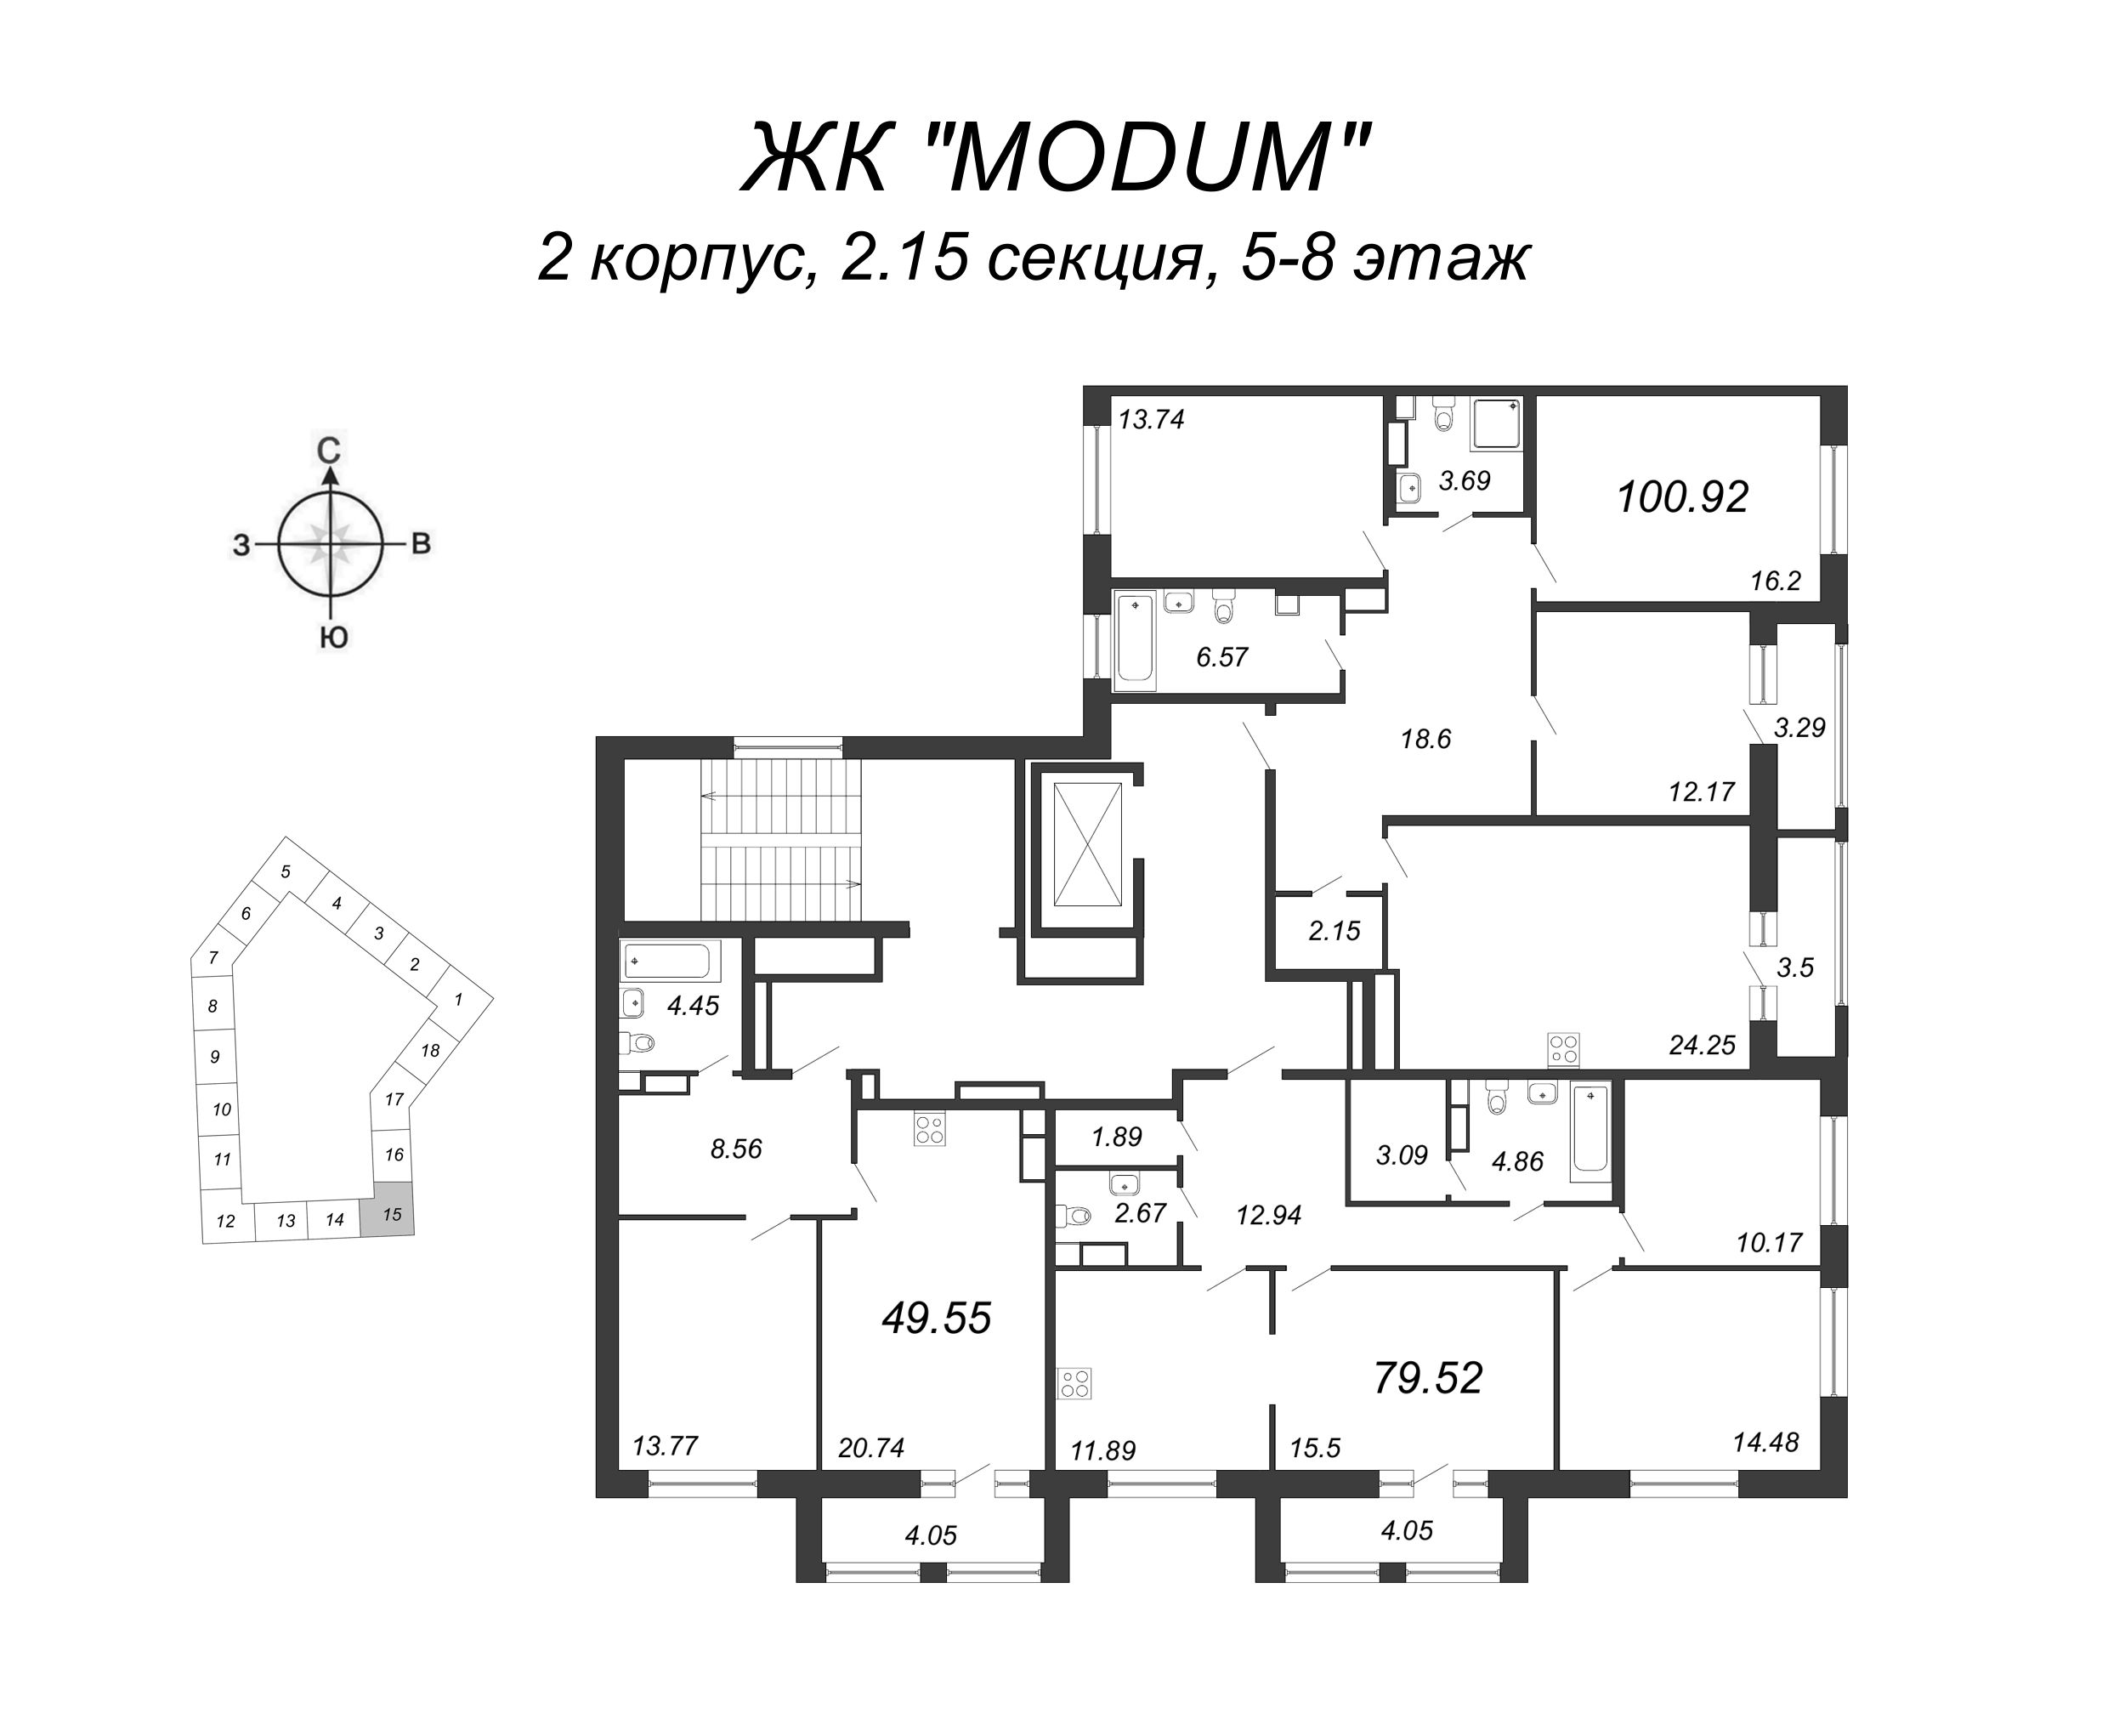 3-комнатная квартира, 79.52 м² в ЖК "Modum" - планировка этажа